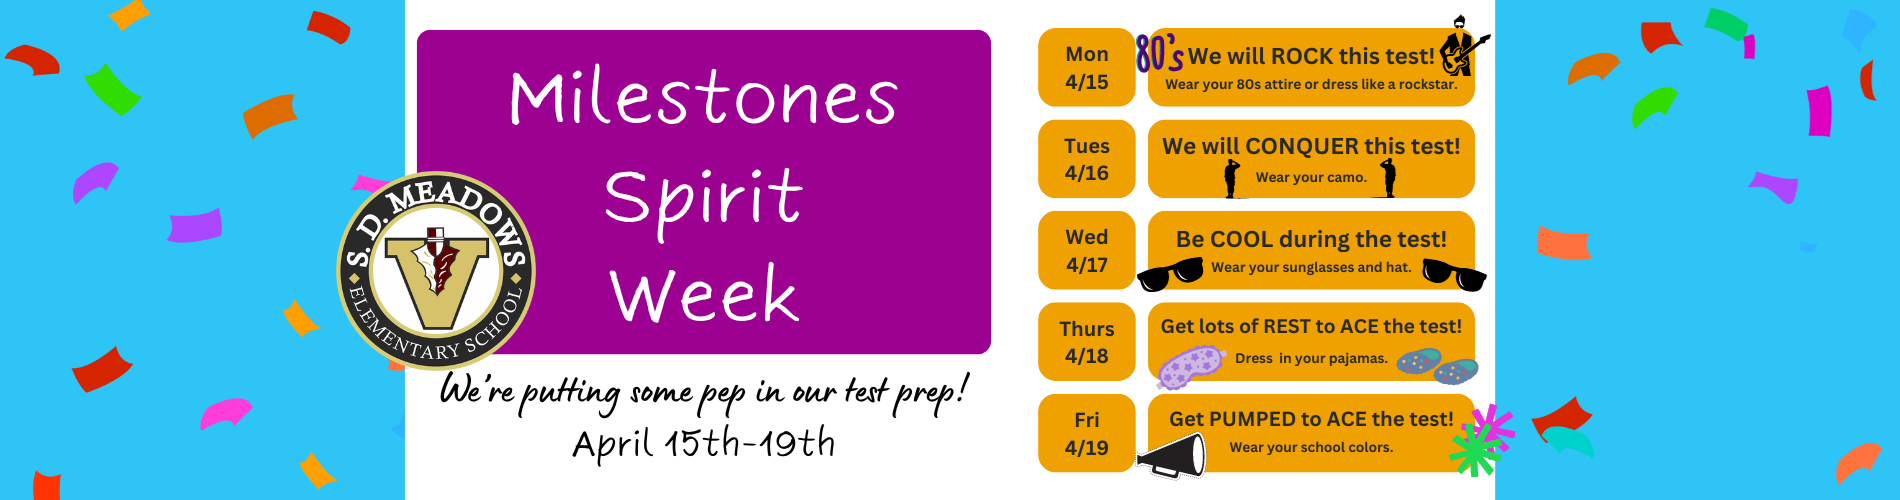 Milestones Spirit Week